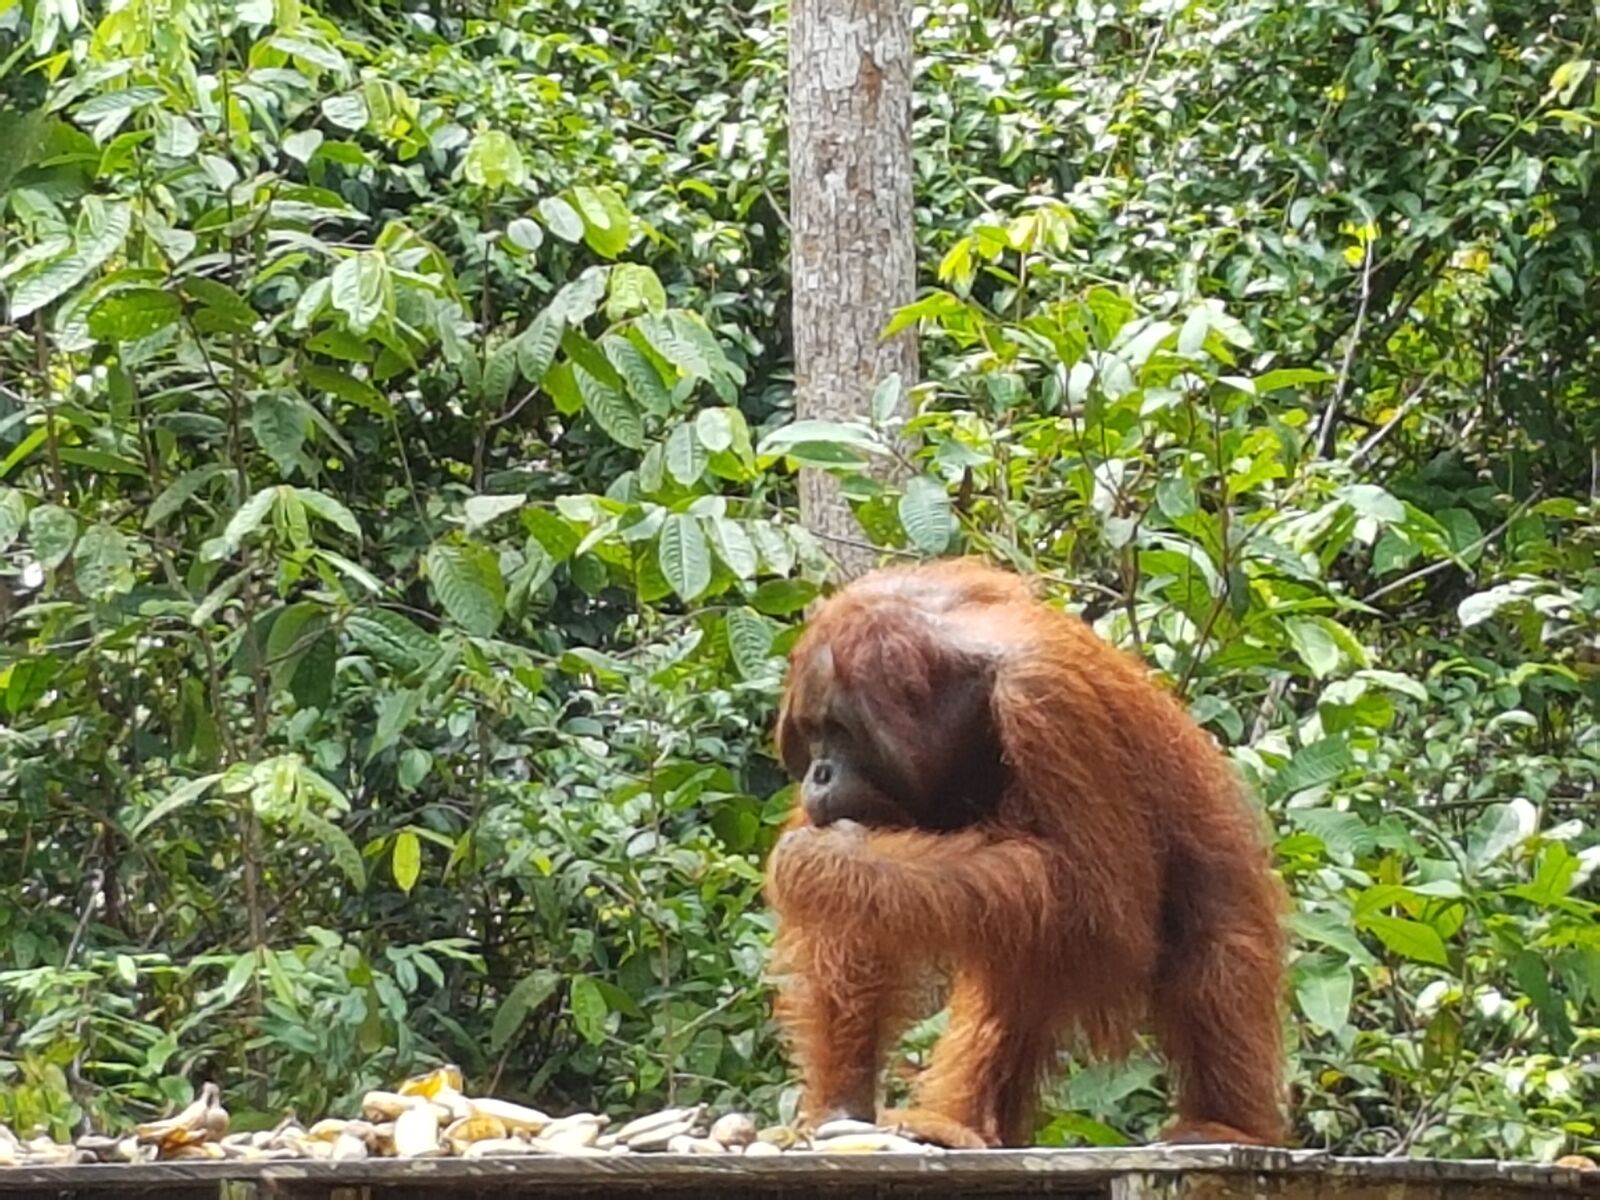 Samsung Galaxy S7 sample photo. Orang outang, monkey, orang-outang photography